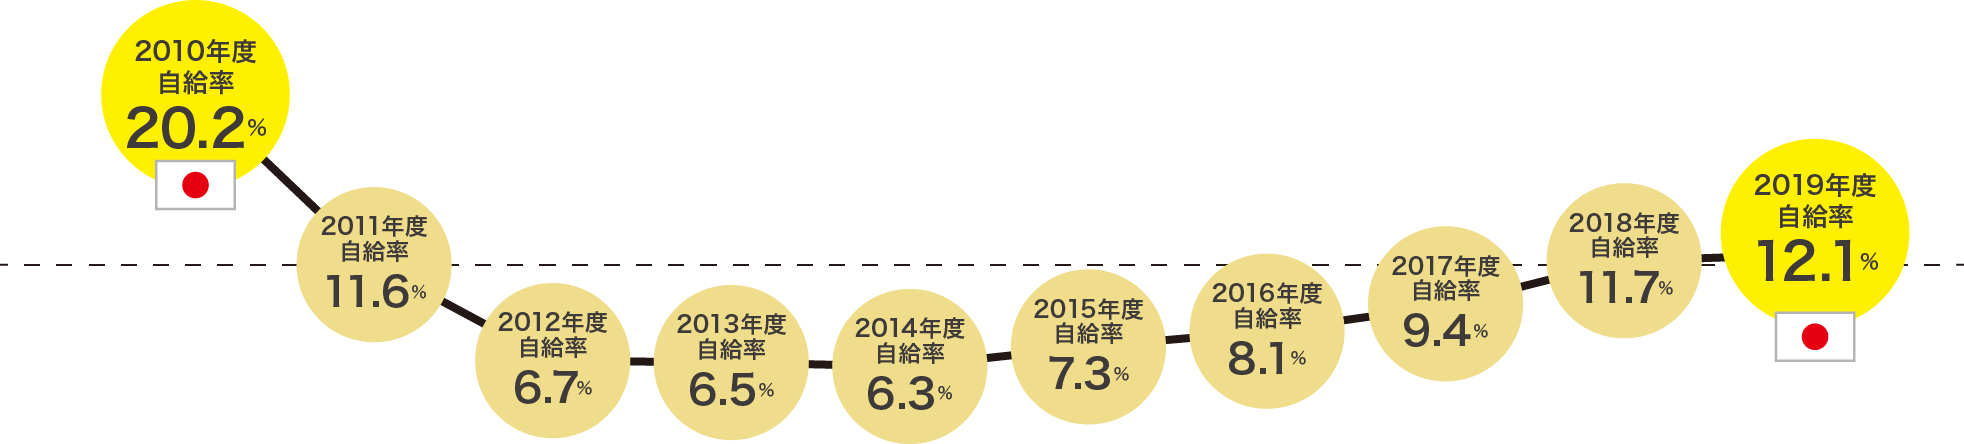 日本のエネルギー自給率